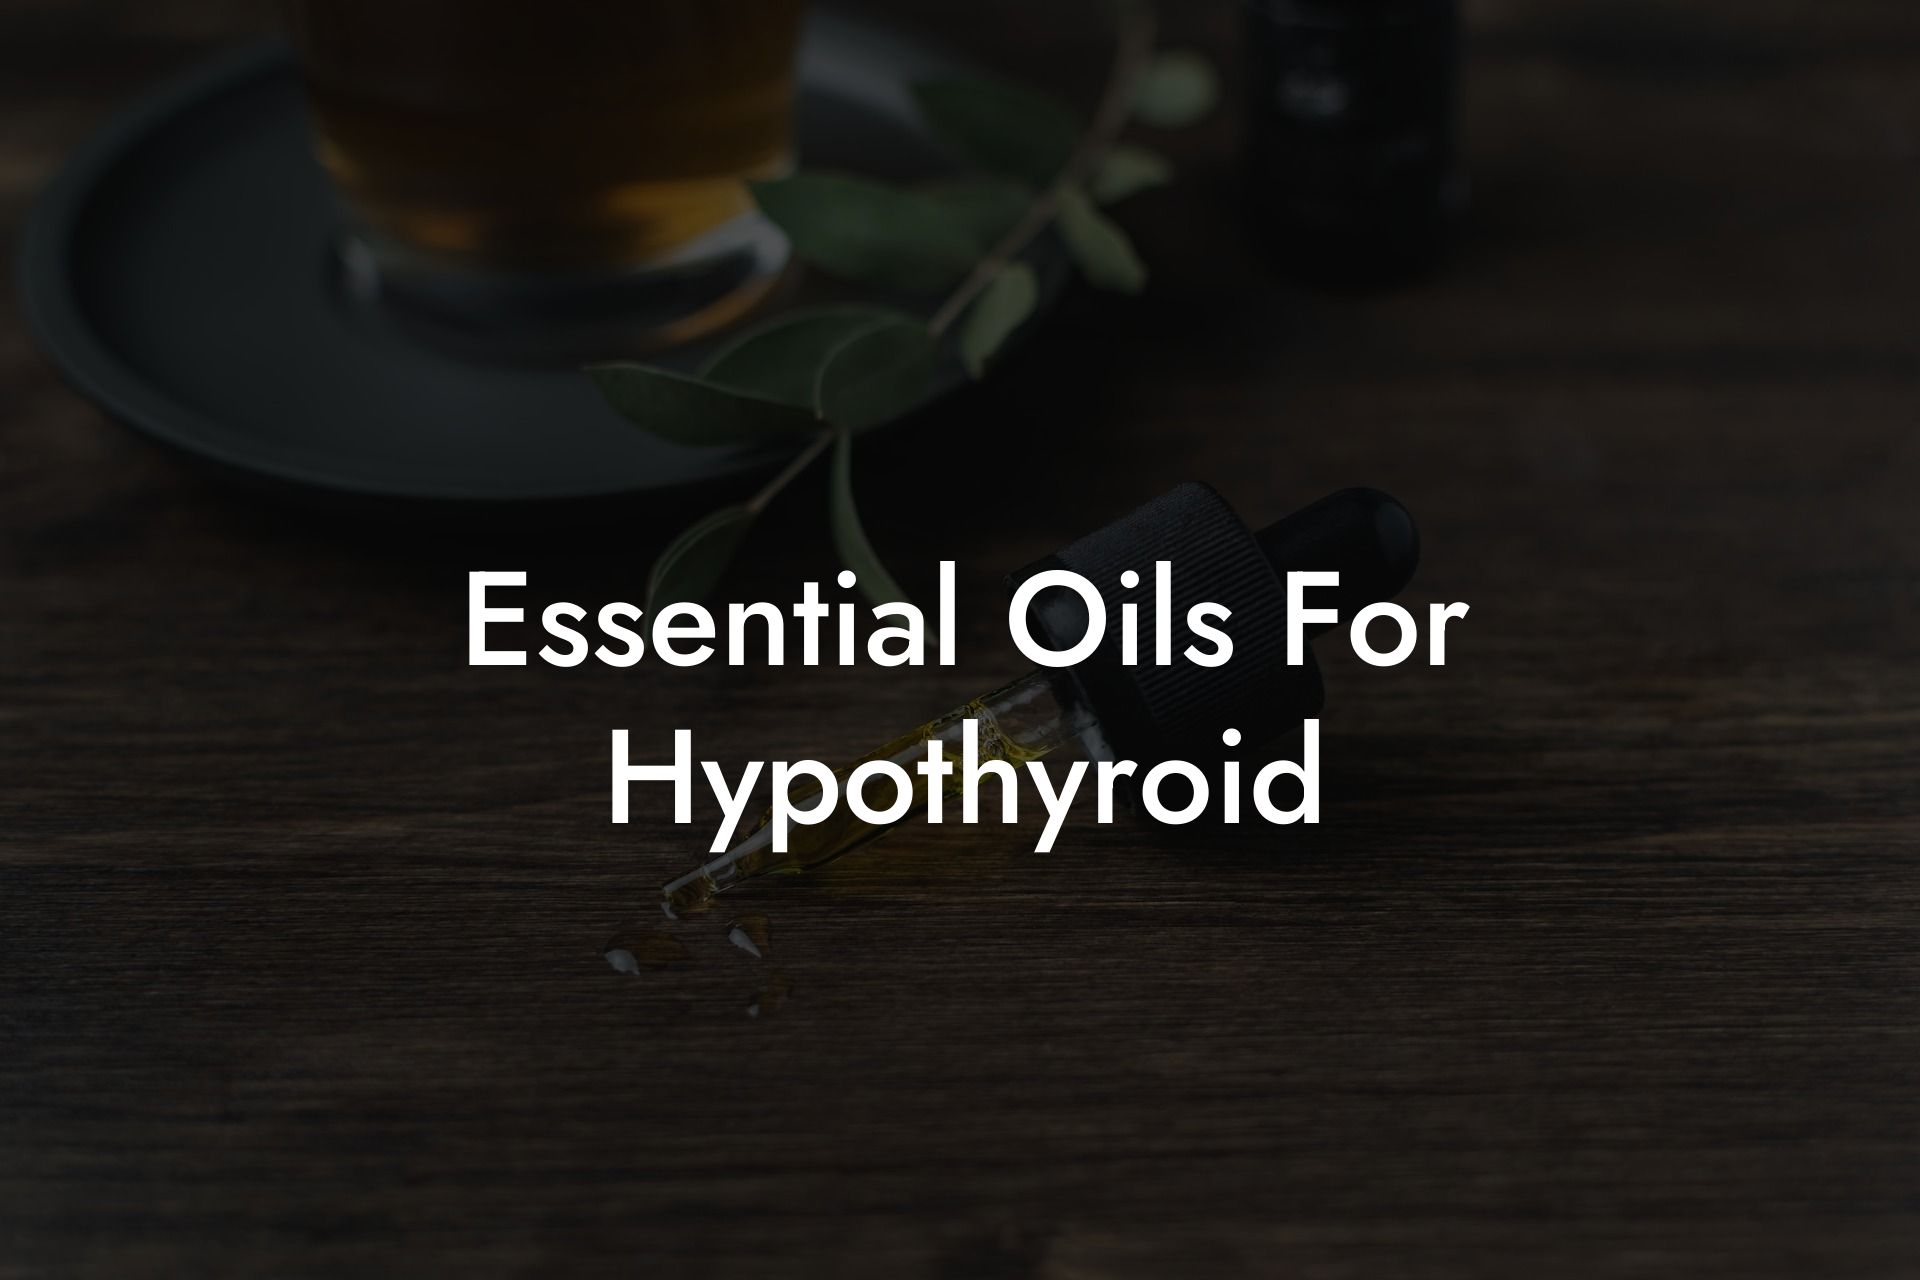 Essential Oils For Hypothyroid